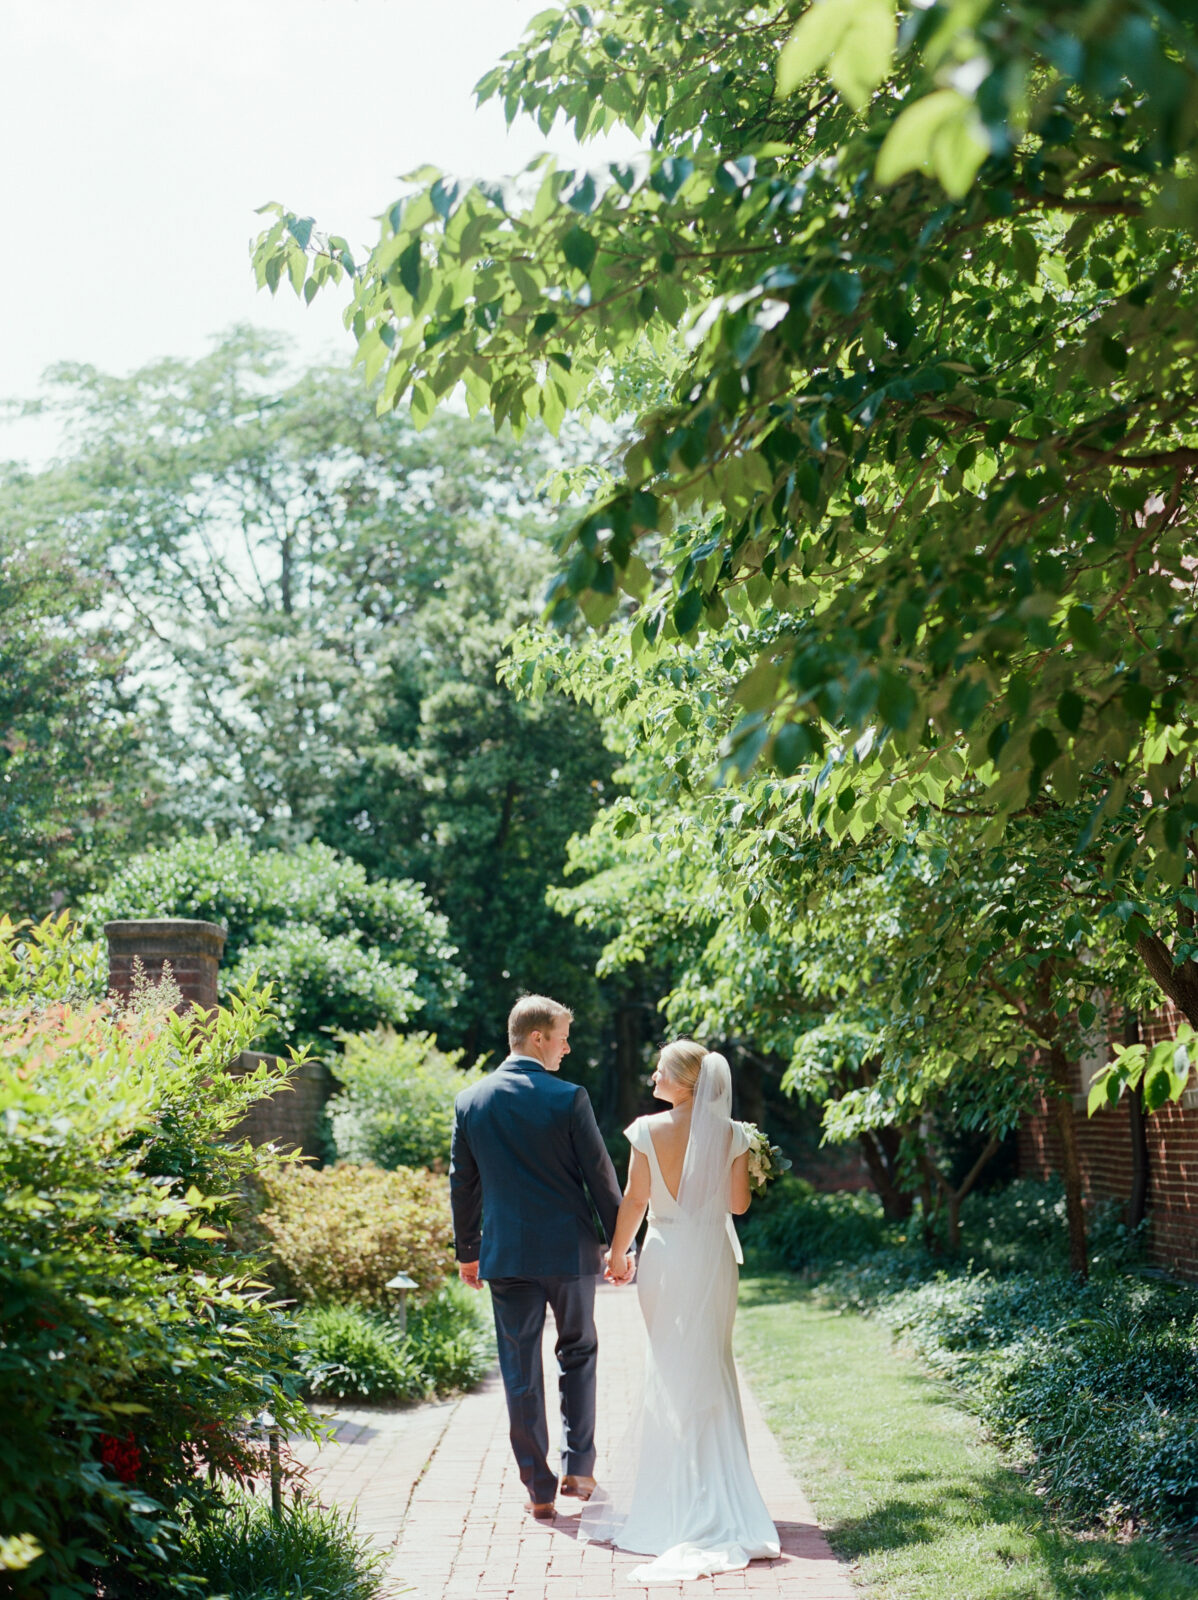 bride and groom walking in green garden area